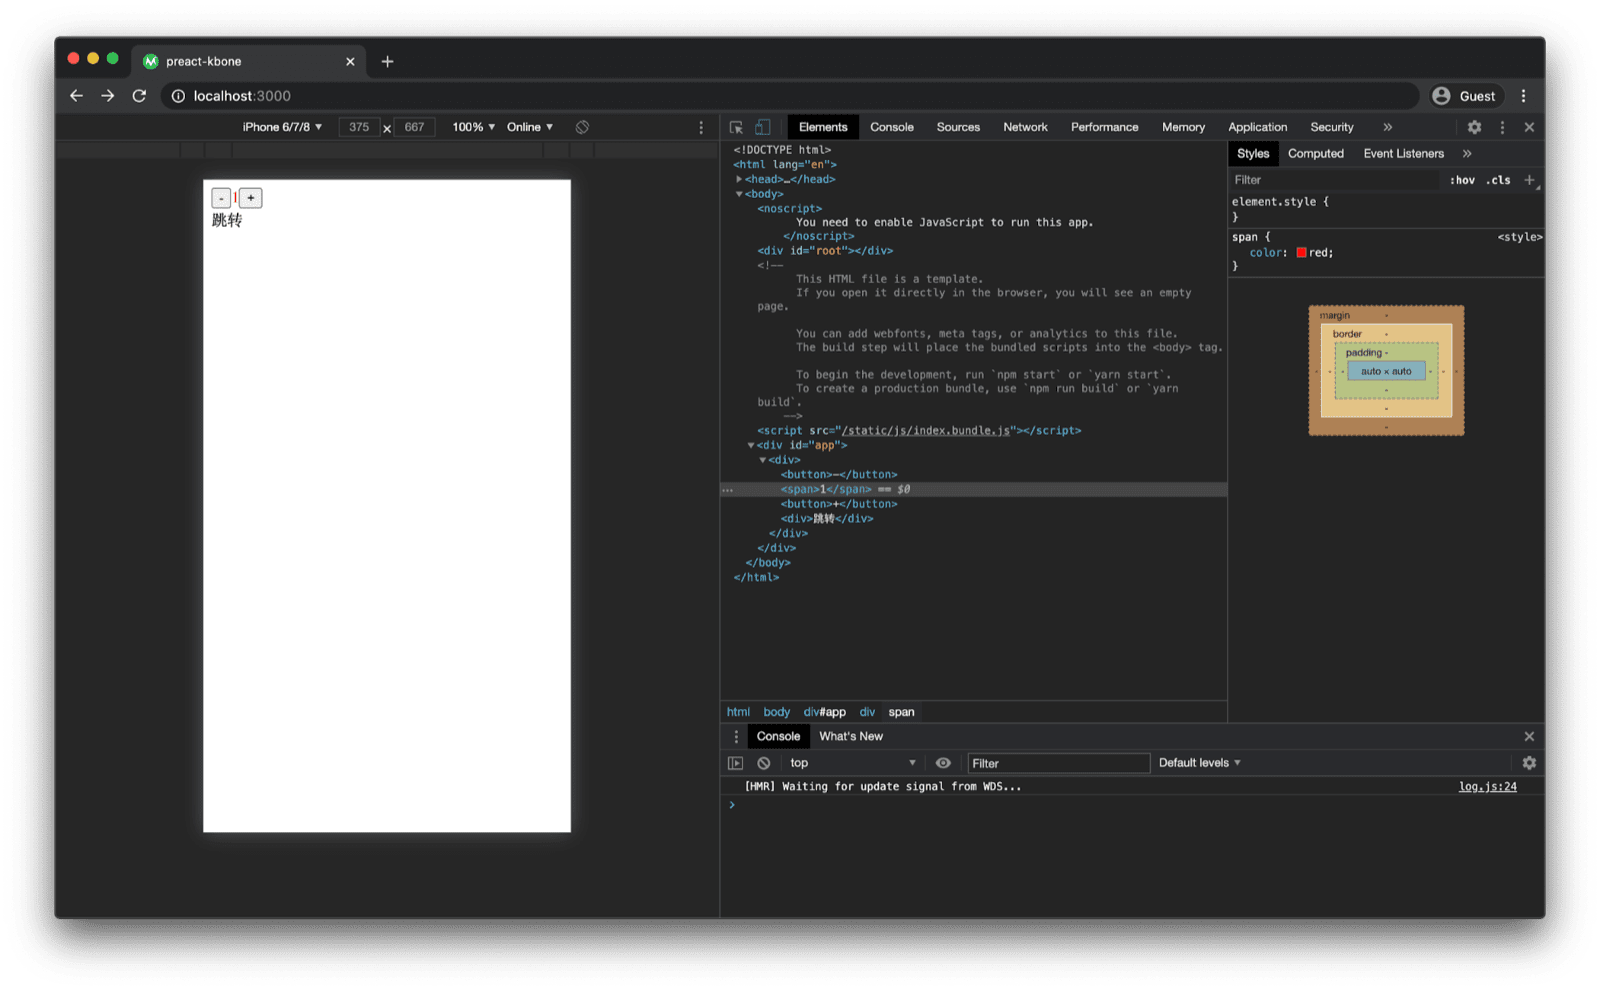 ウェブブラウザで開いた Preact kbone テンプレートのデモアプリ。DOM 構造を調べると、Preact コンポーネントのコードに基づいて、想定されるマークアップが表示されます。